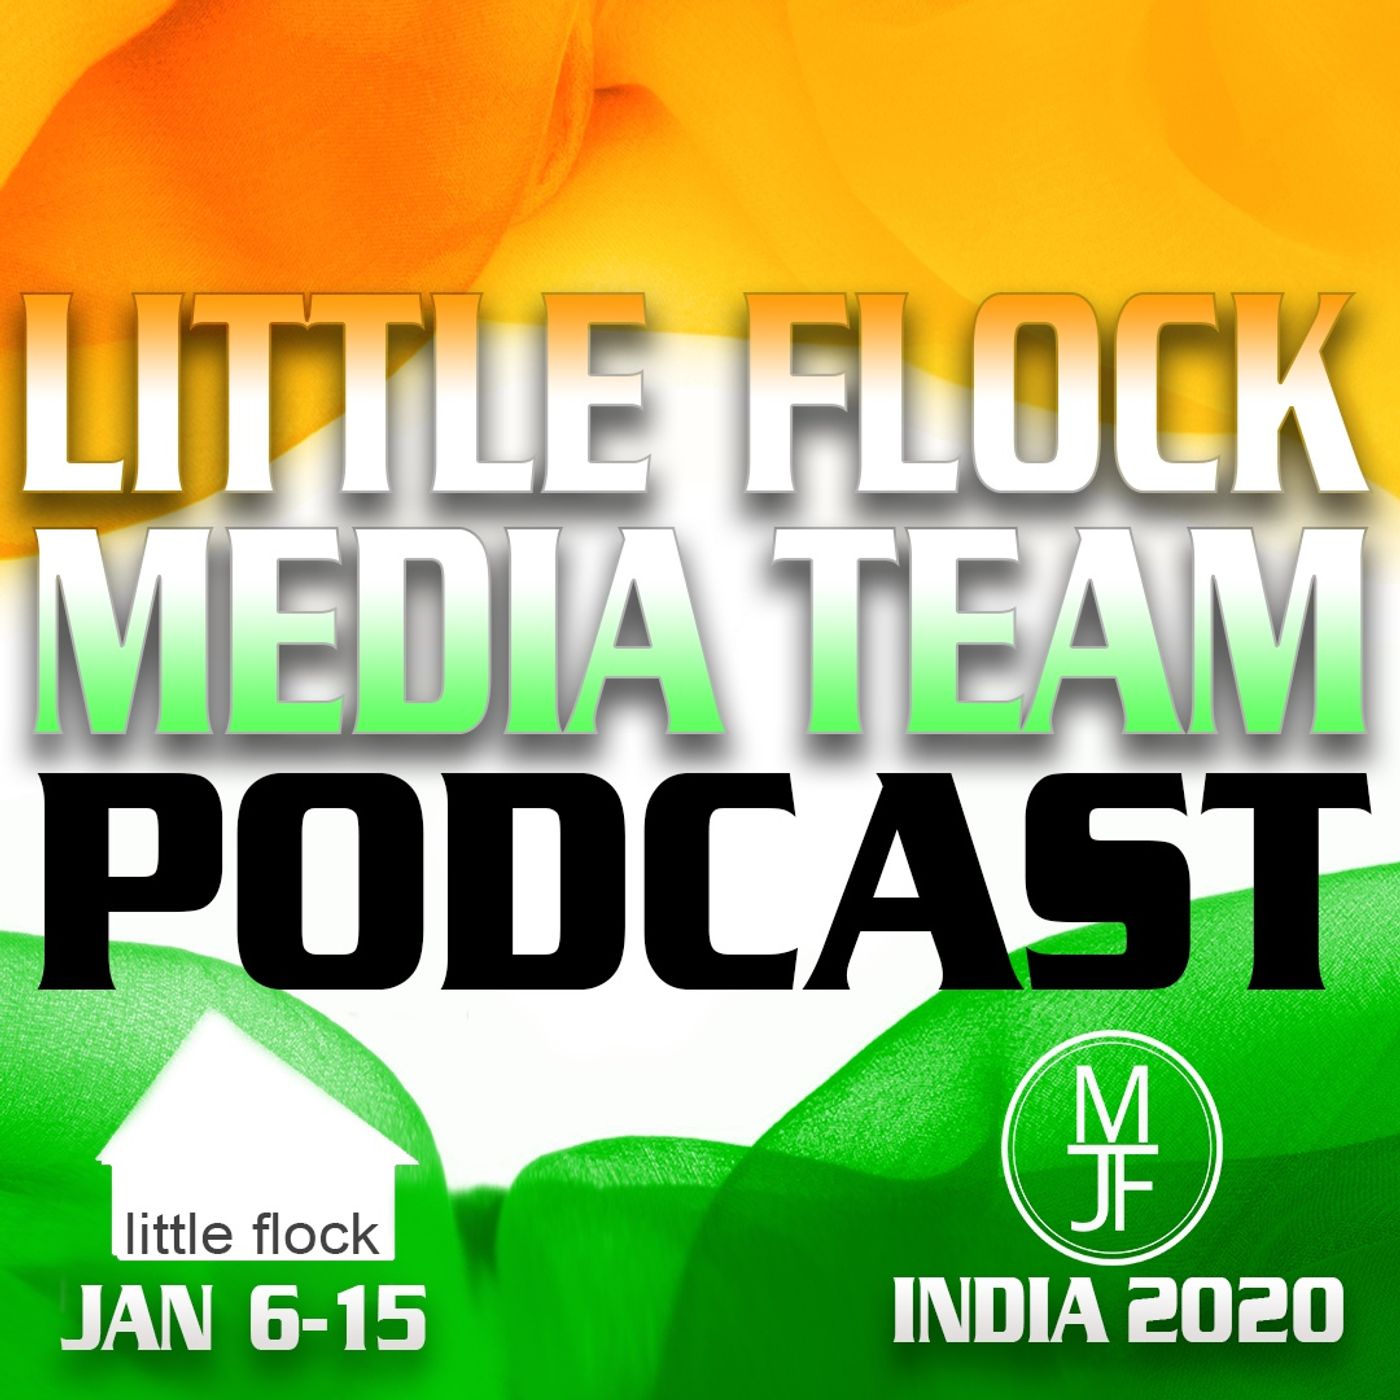 Little Flock Media Team Podcast